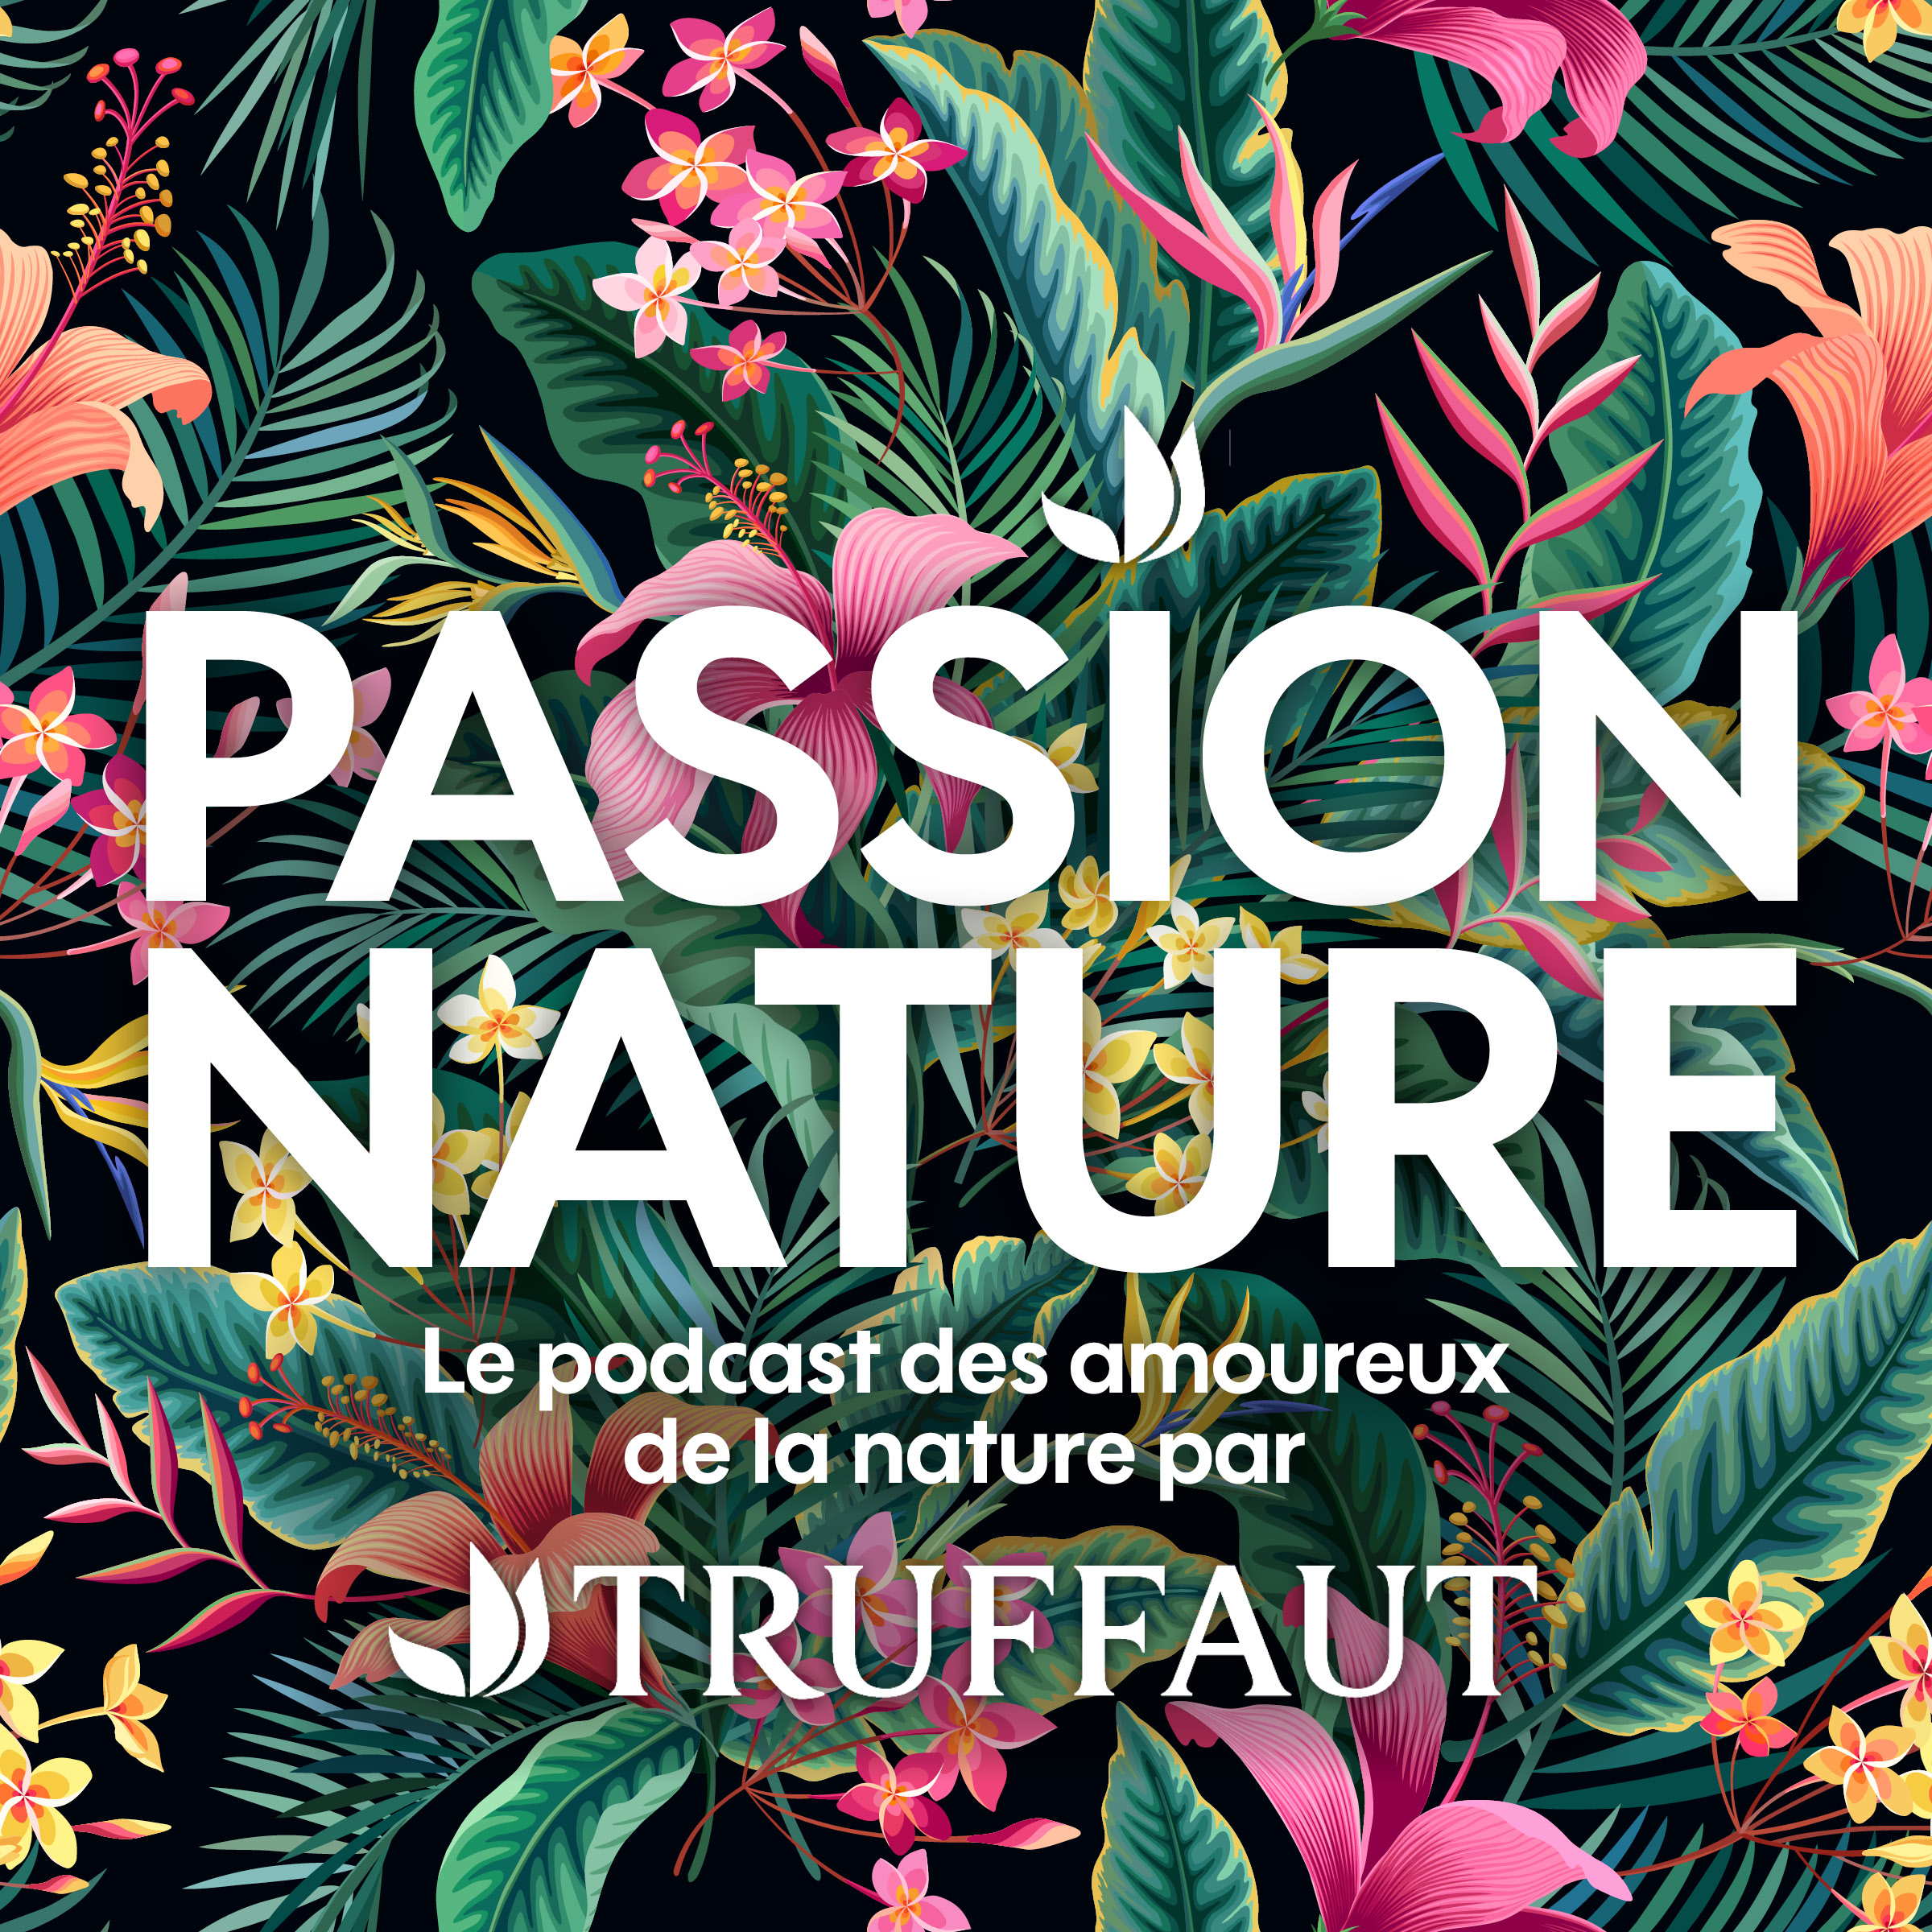 Truffaut : un podcast pour les amoureux de la nature